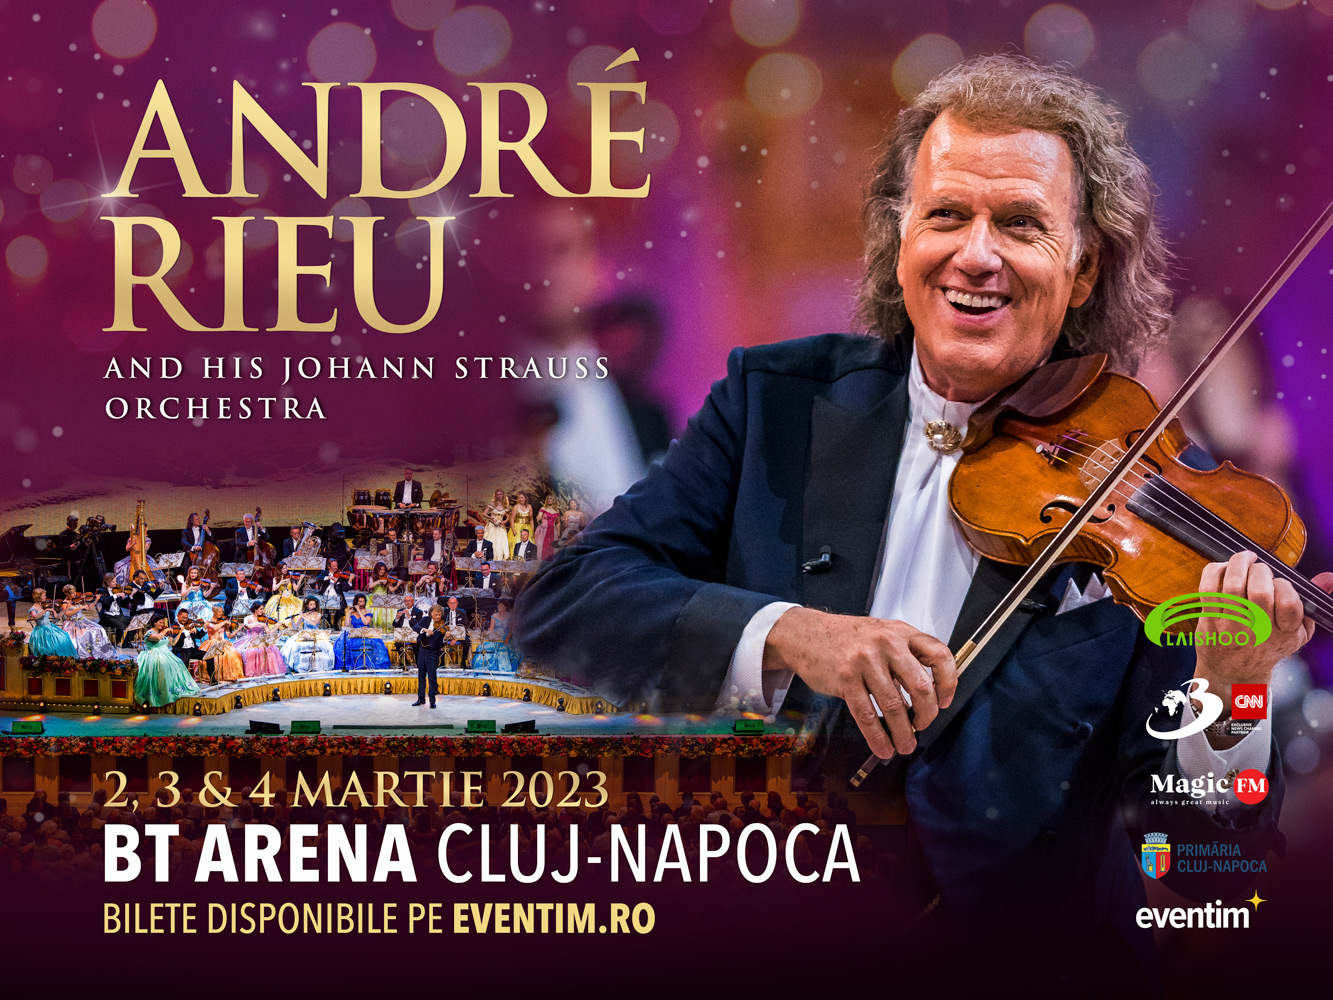 ANDRÉ RIEU anunță cel de-al treilea concert la BTArena Cluj-Napoca!